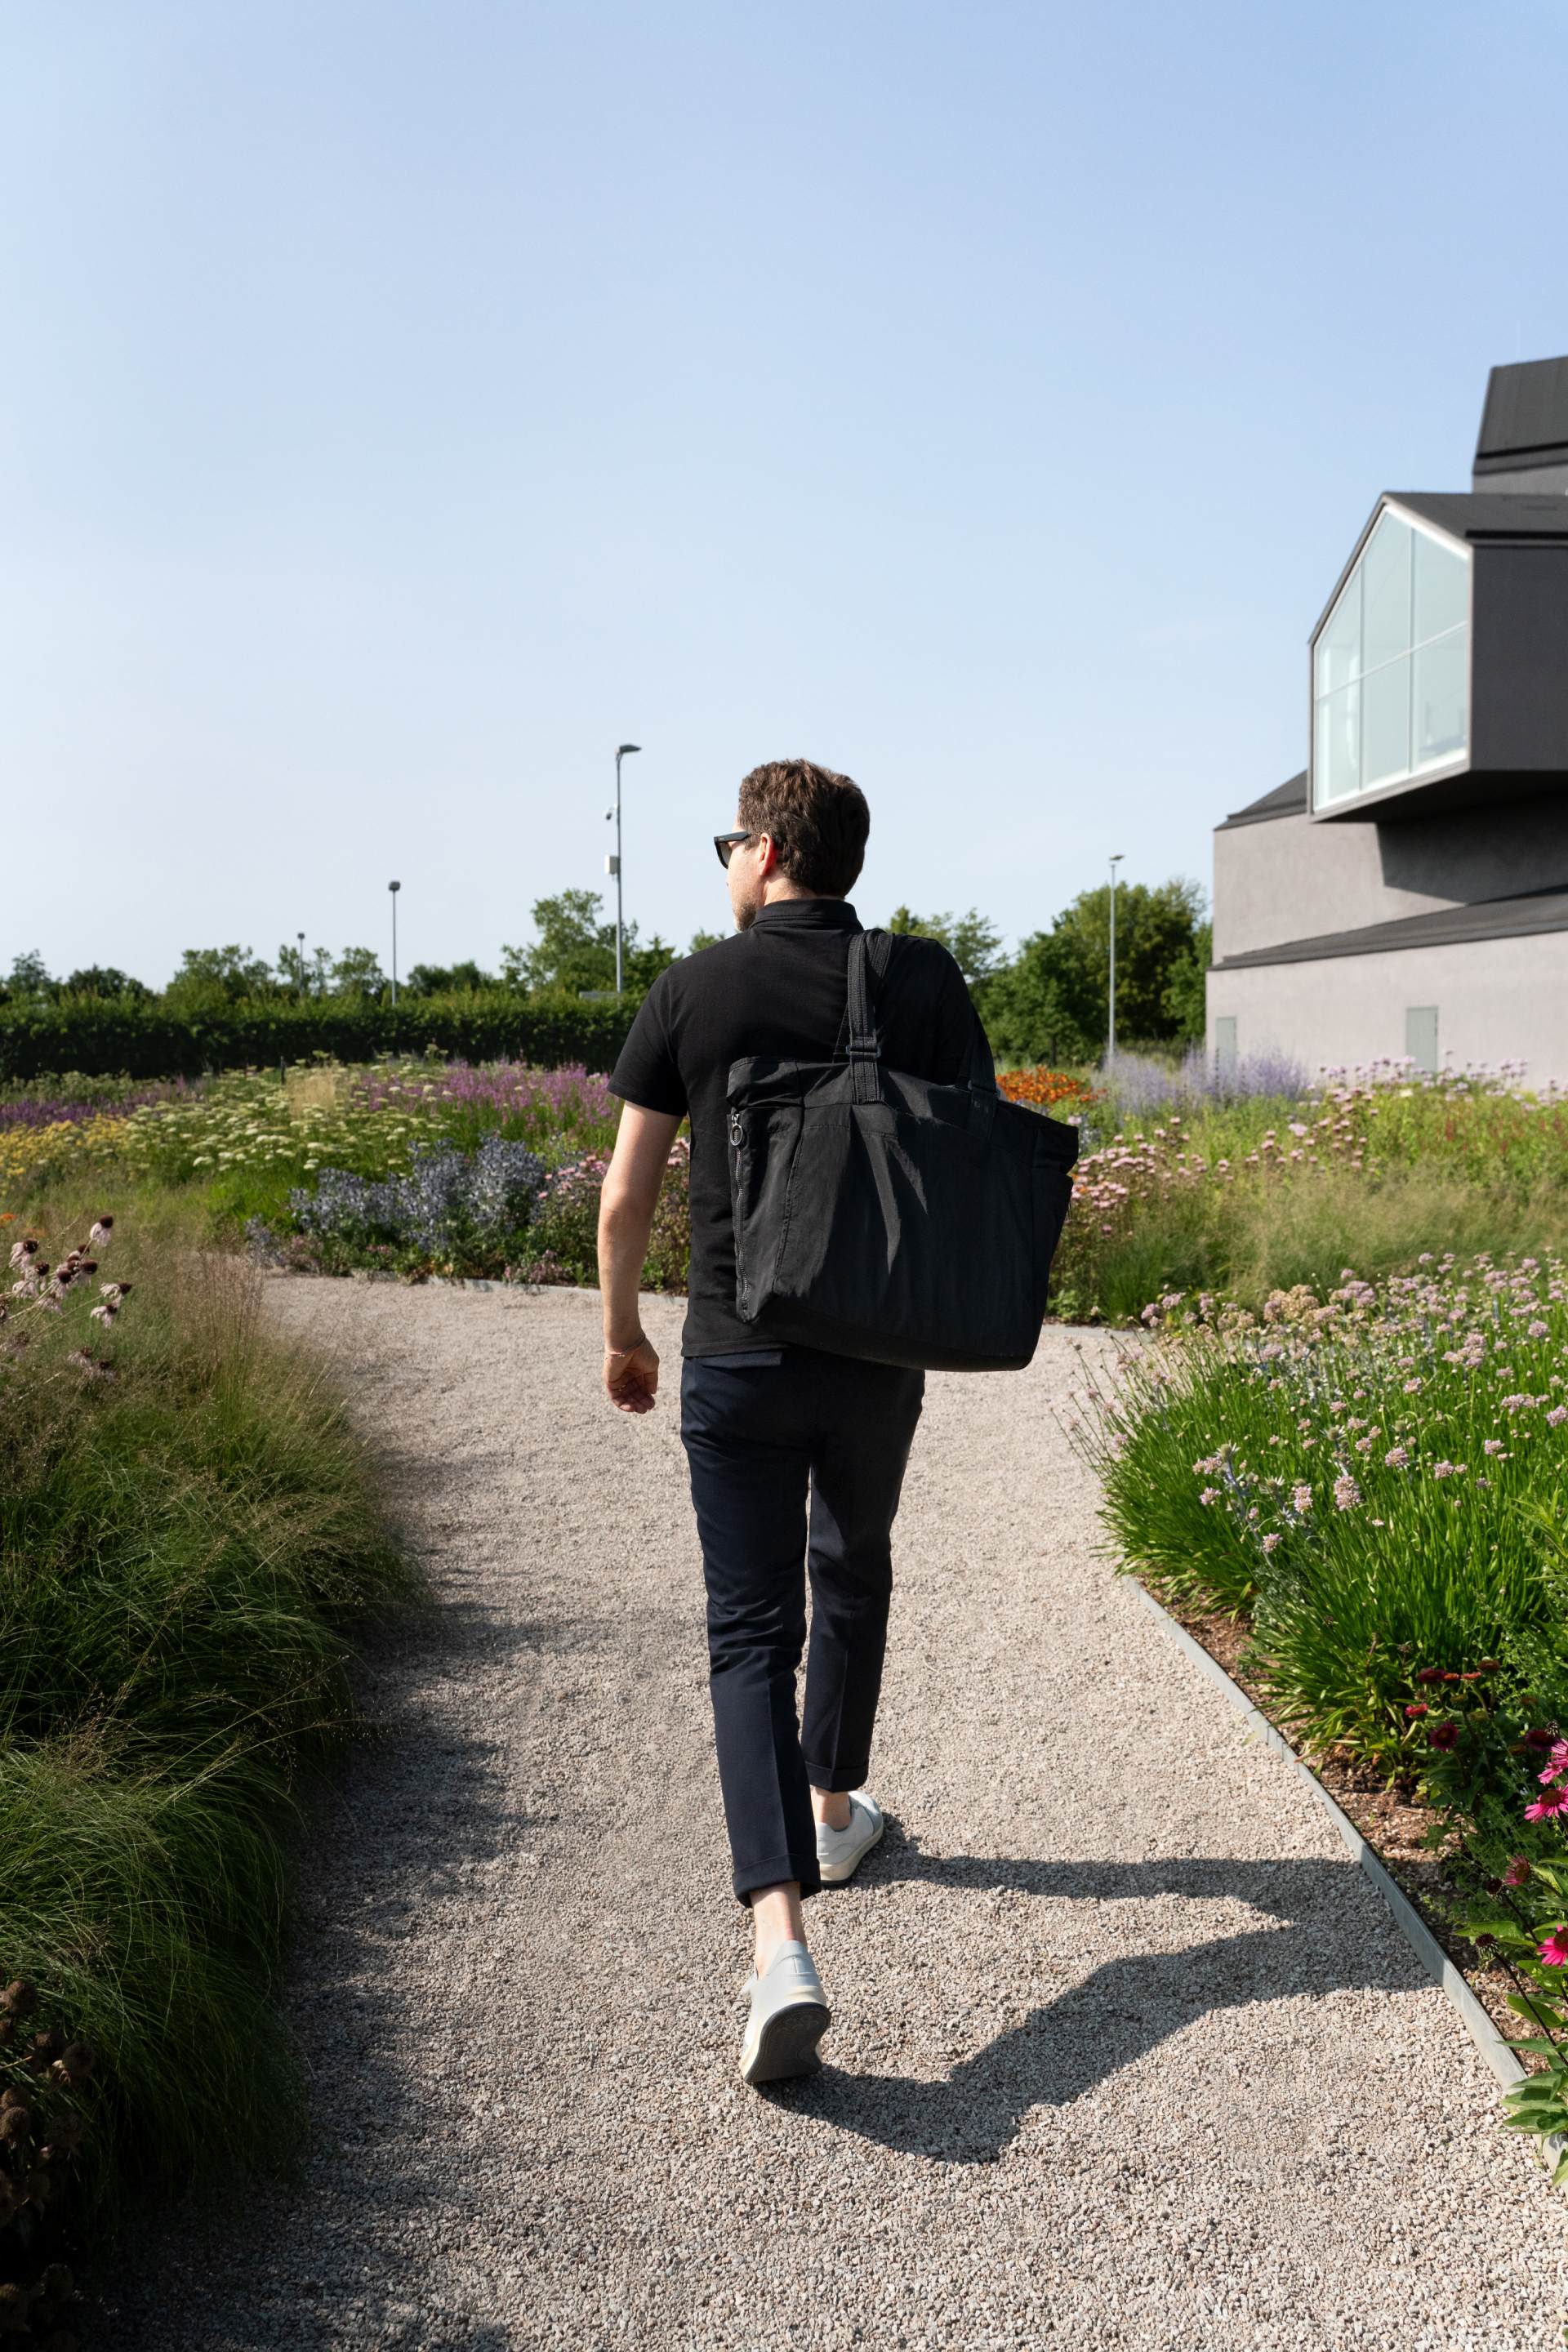 Mateo Kries loopt door de door Piet Oudolf ontworpen tuin op de Vitra Campus.